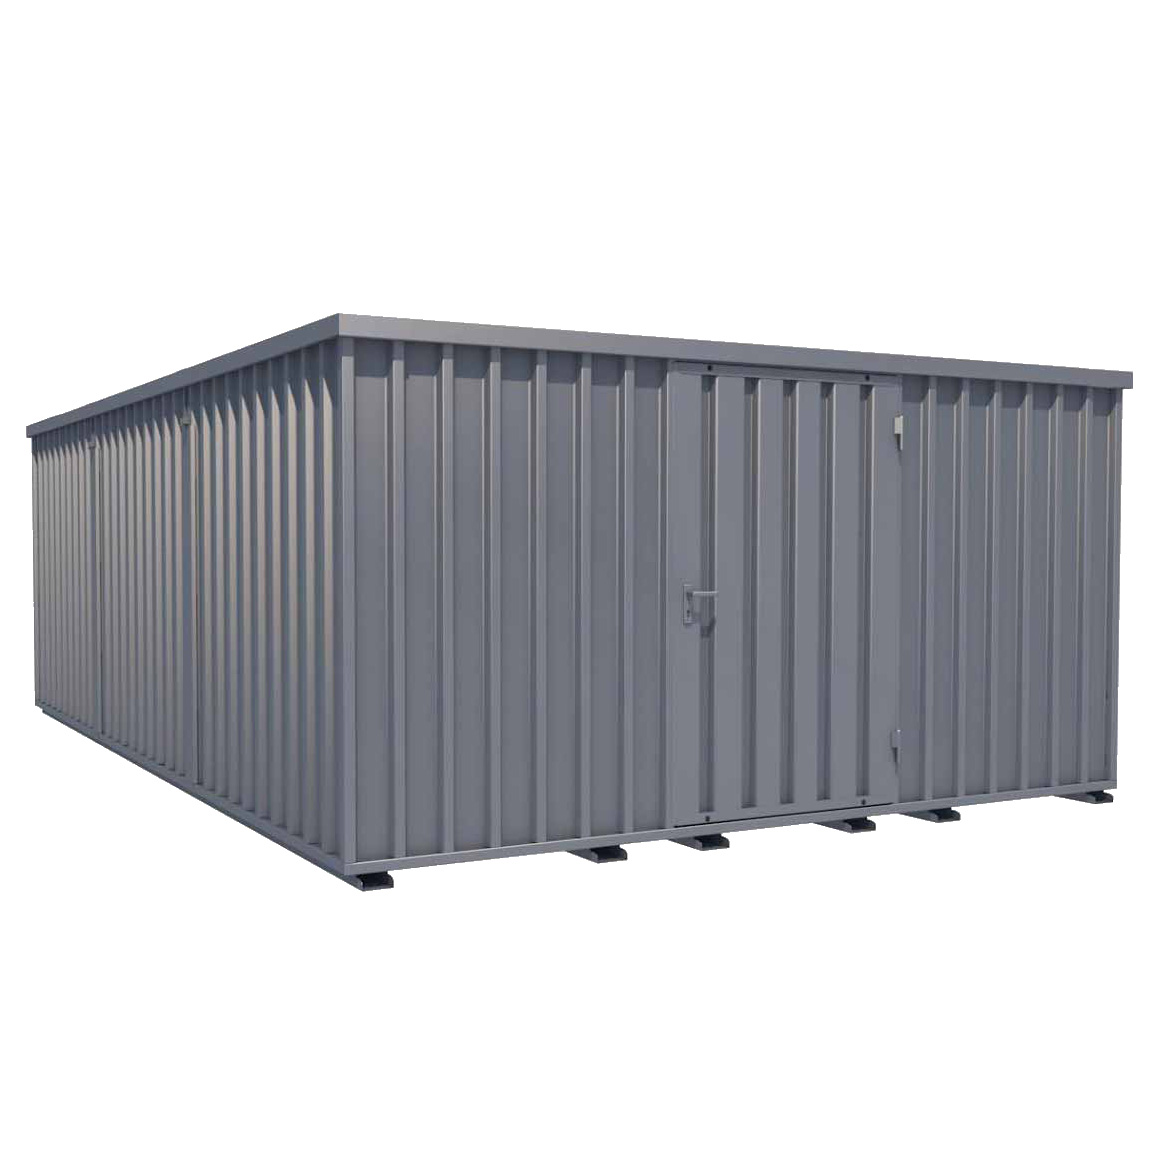 Reifencontainer Reifenlagercontainer XXL | H 2445 x B 4100 x T 6300 mm | Tür stirnseitig 1-flügelig